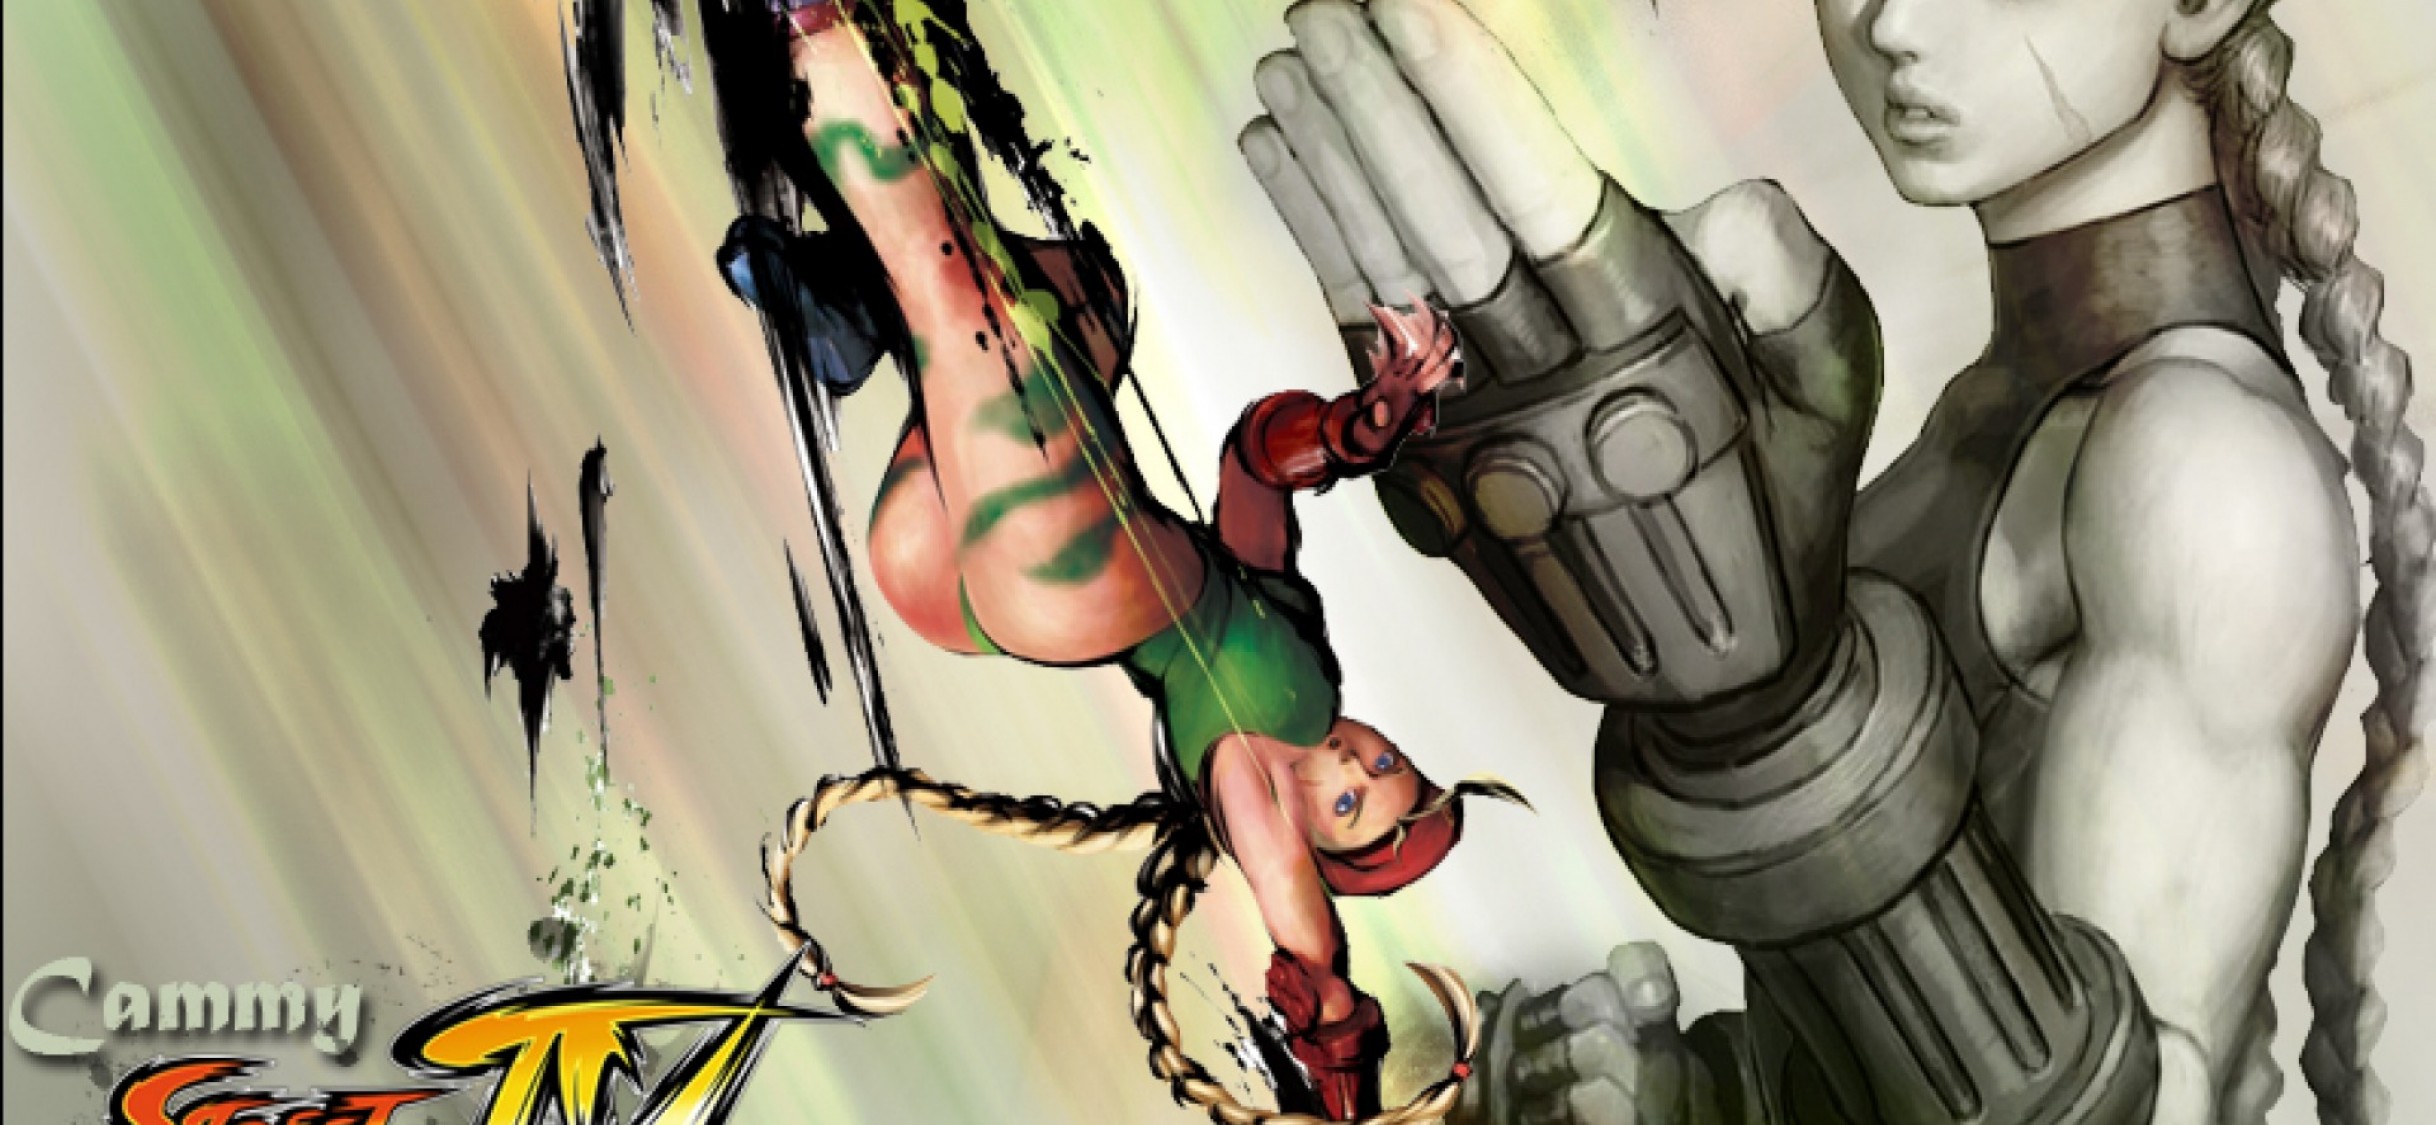 Super Street Fighter V HD Wallpaper